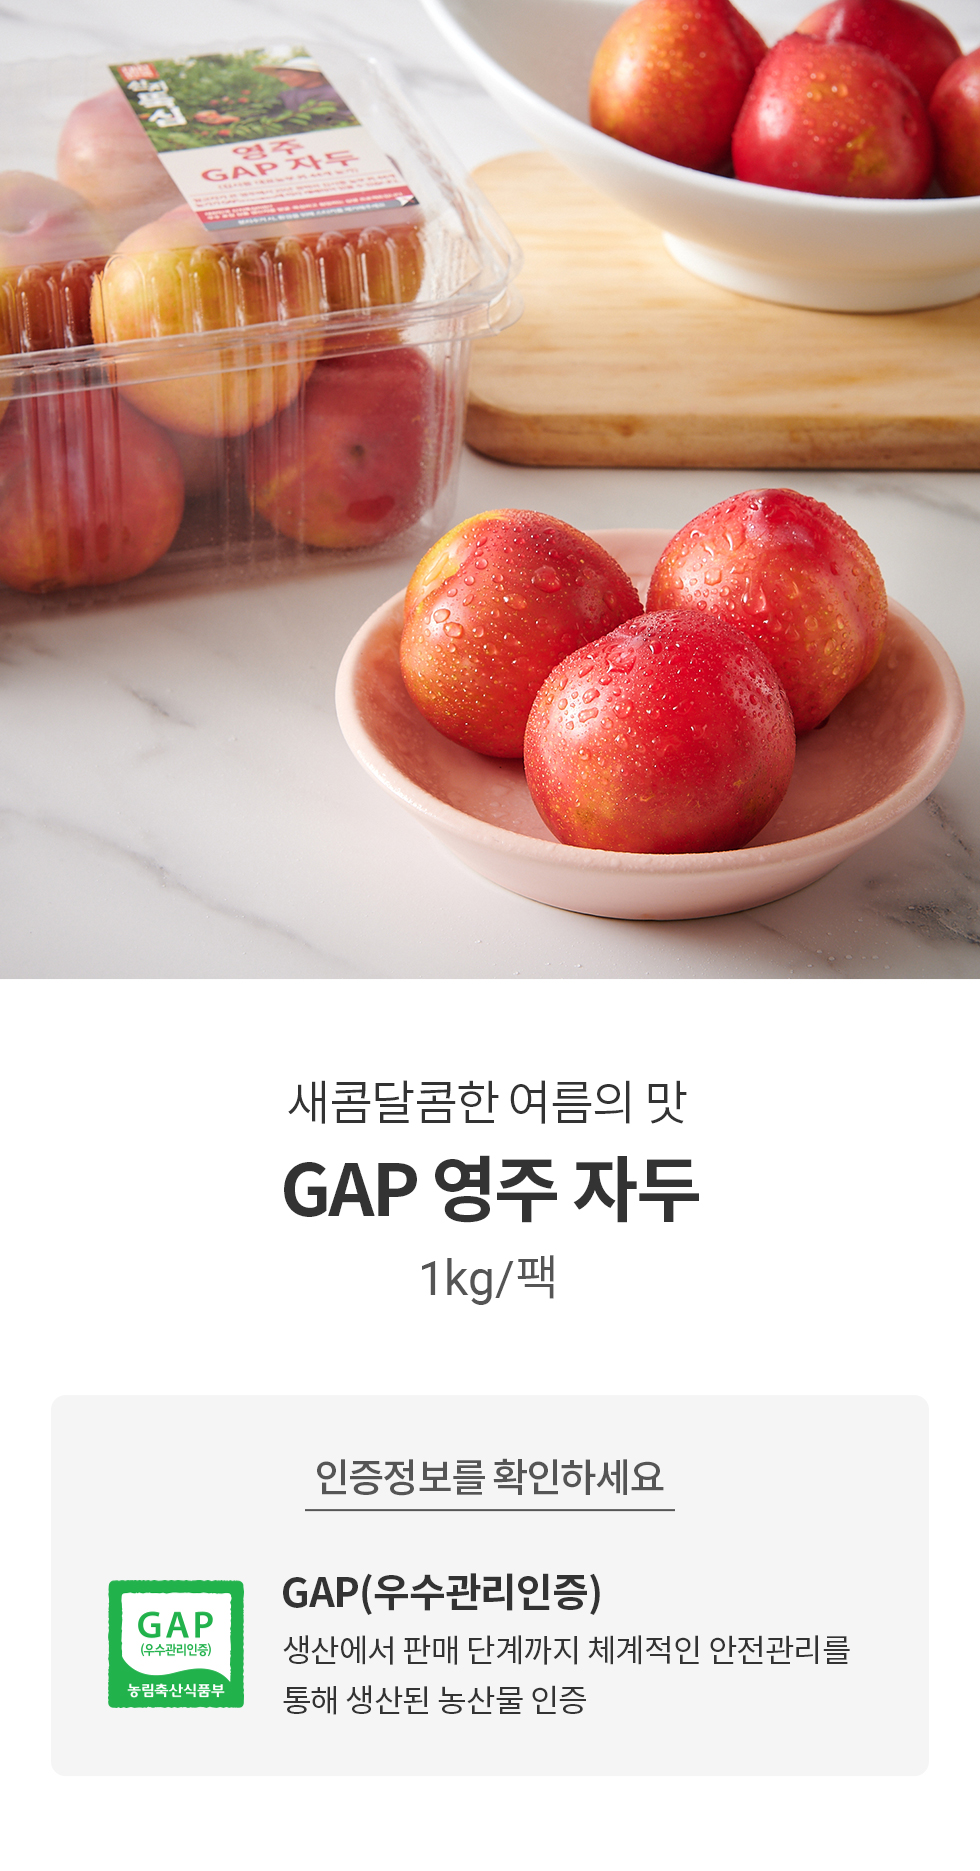 새콤달콤한 여름의 맛 GAP 영주 자두 1kg/팩GAP: 생산에서 판매 단계까지 체계적인 안전관리를 통해 생산된 농산물 인증상품입니다.